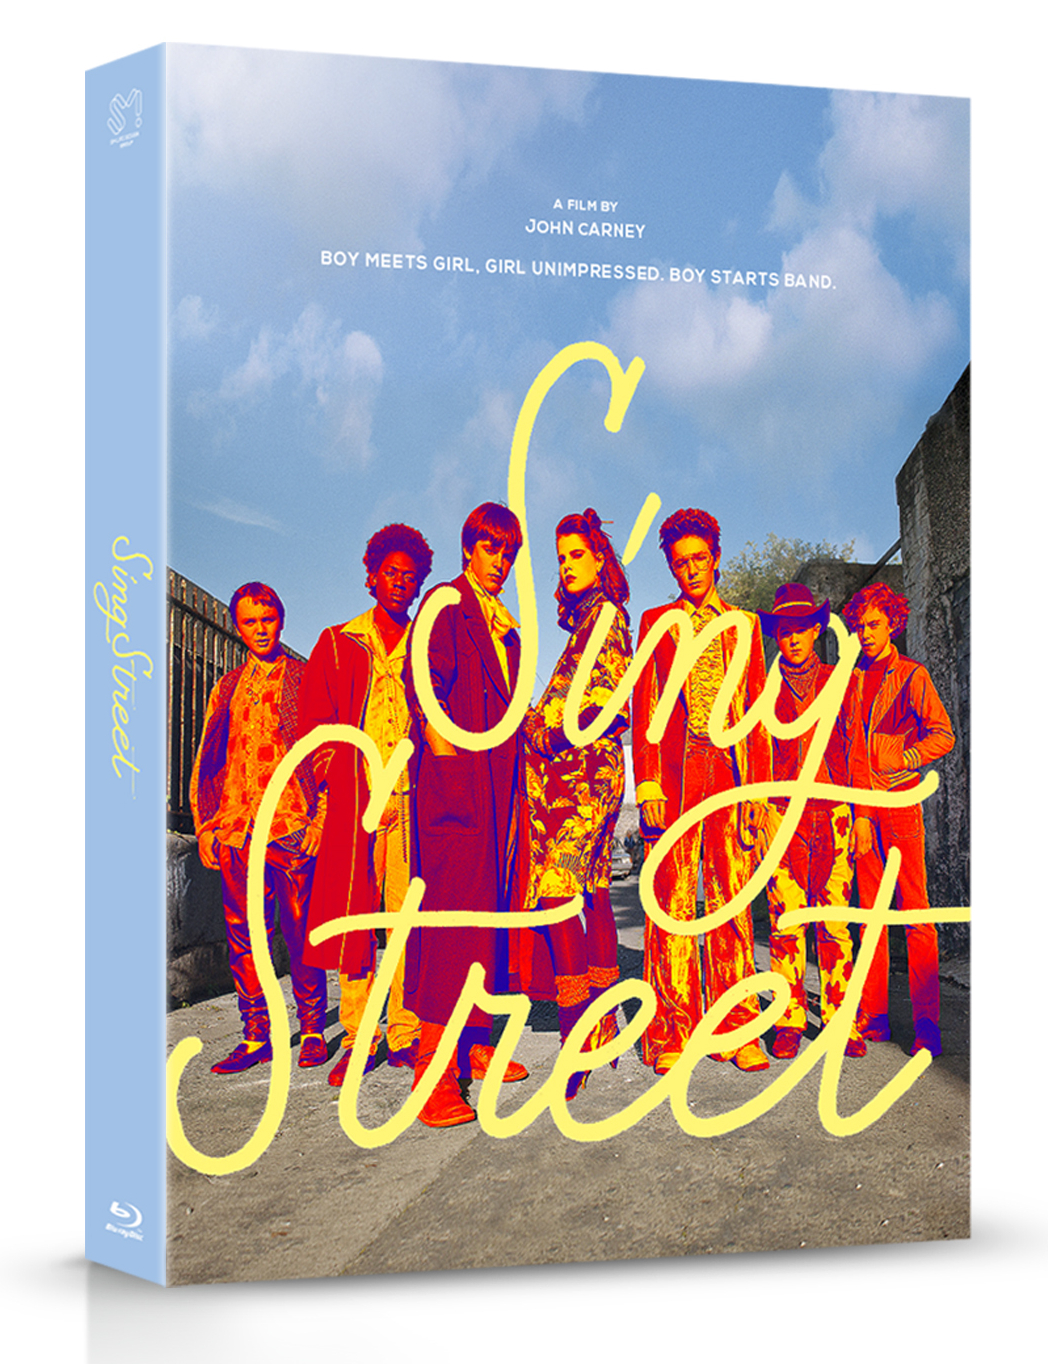 [Blu-ray] Sing Street(BD + OST) A Type Fullslip Steelbook LE